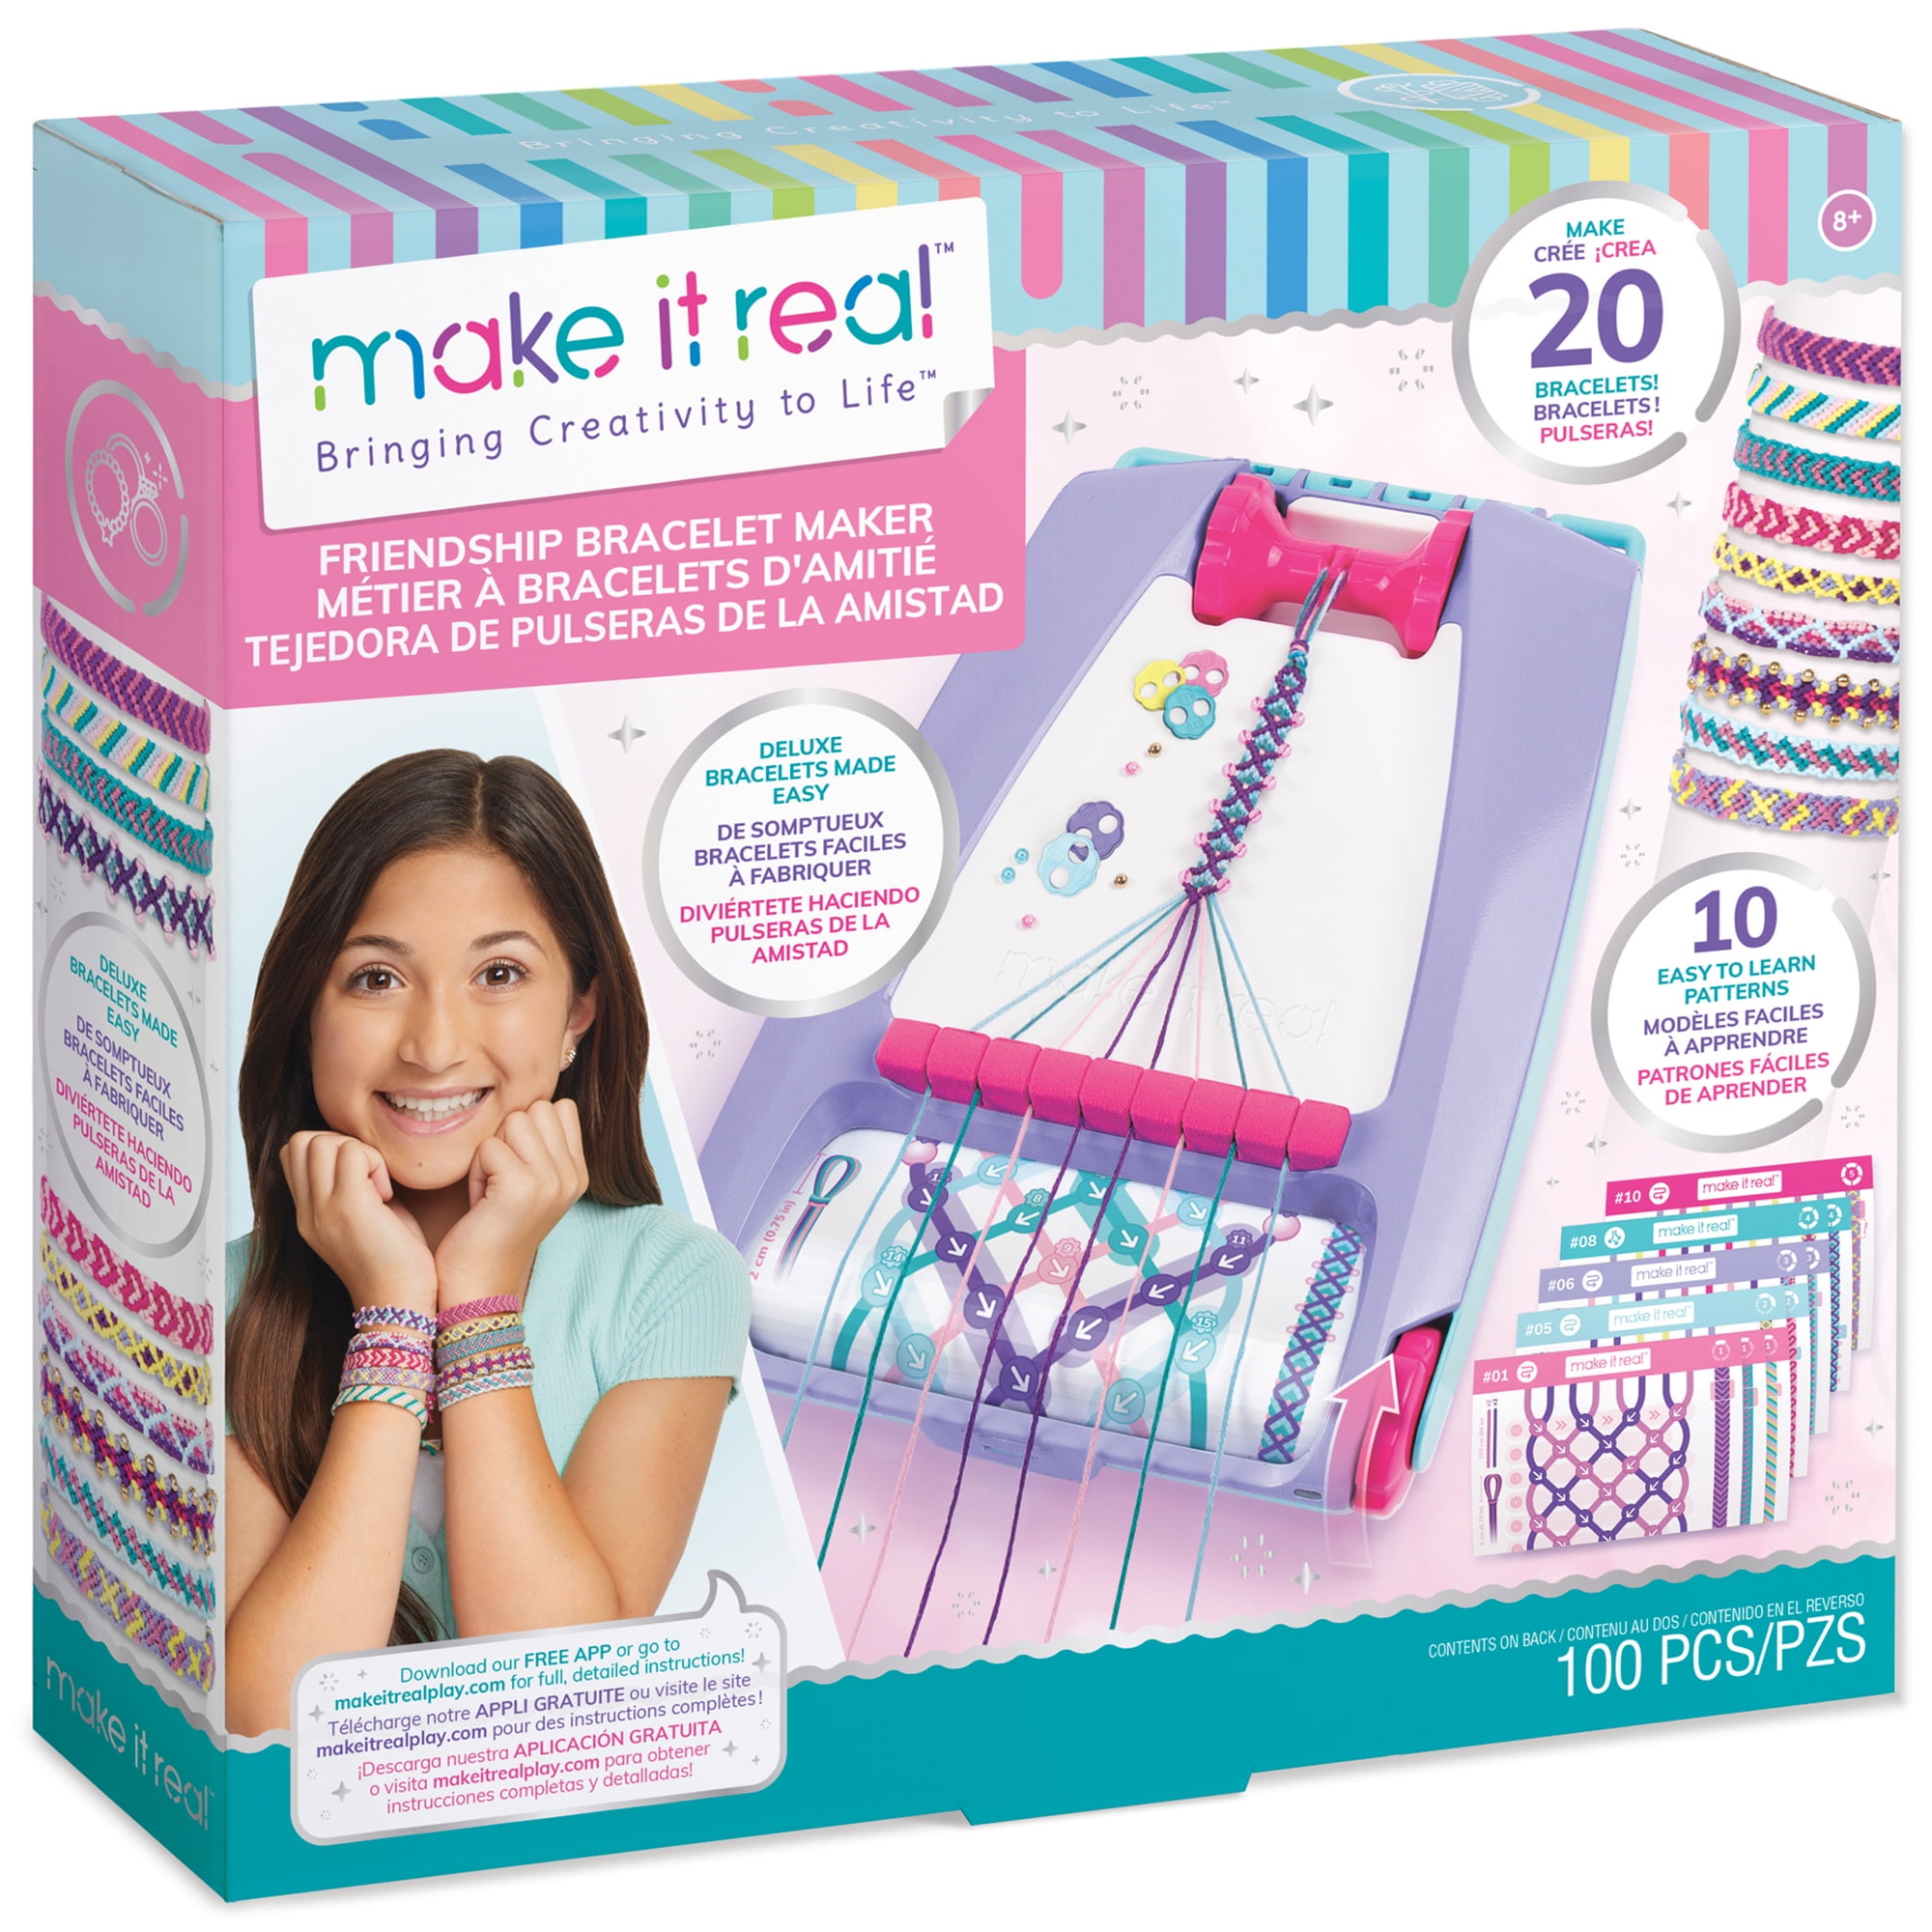  Sense&Play Friendship Bracelet Making Kit for Girls